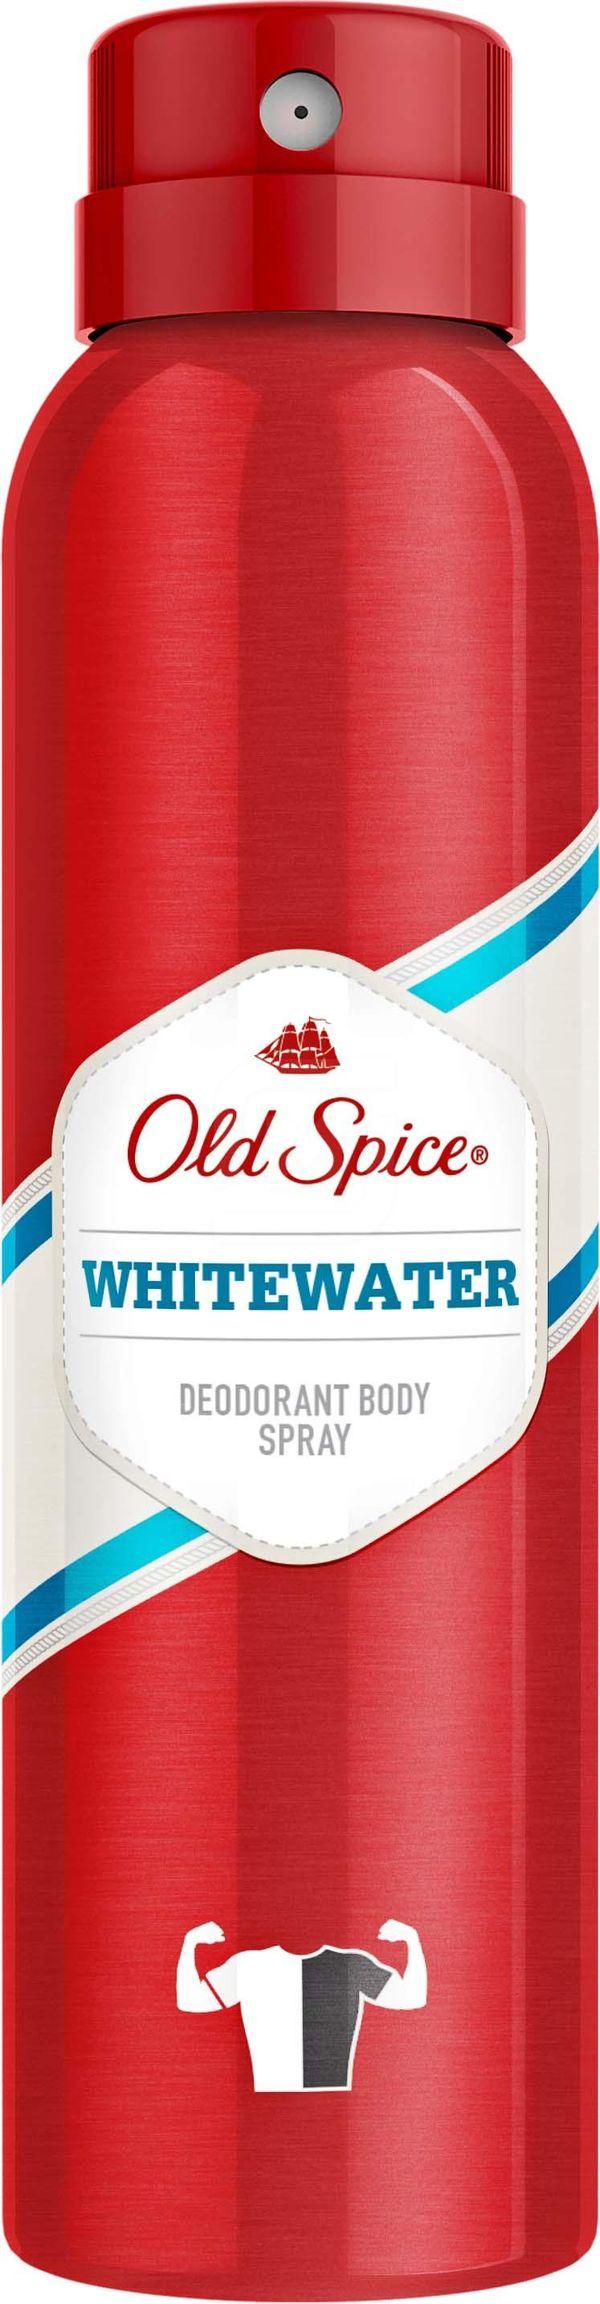 Дезодорант Old Spice Whitewater 150мл